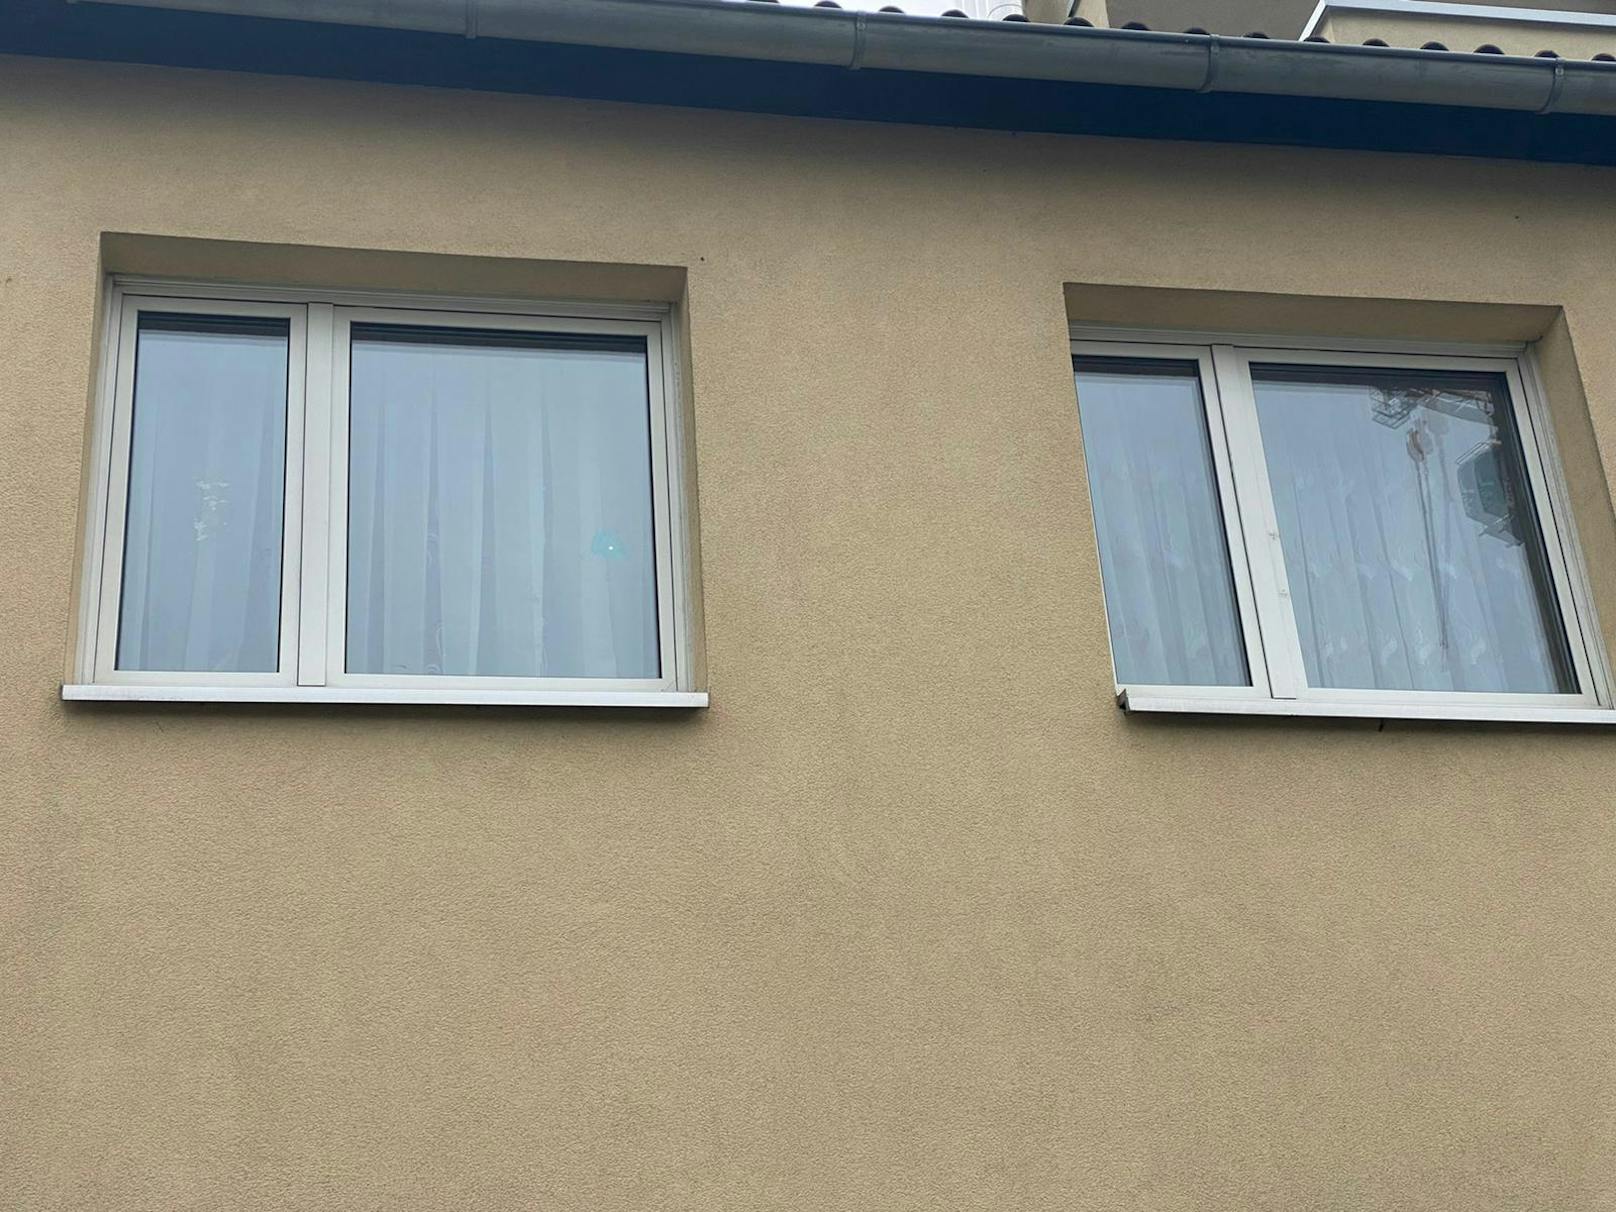 Eine 31-Jährige soll in in diesem Haus in Wien ihre drei Kinder getötet haben.